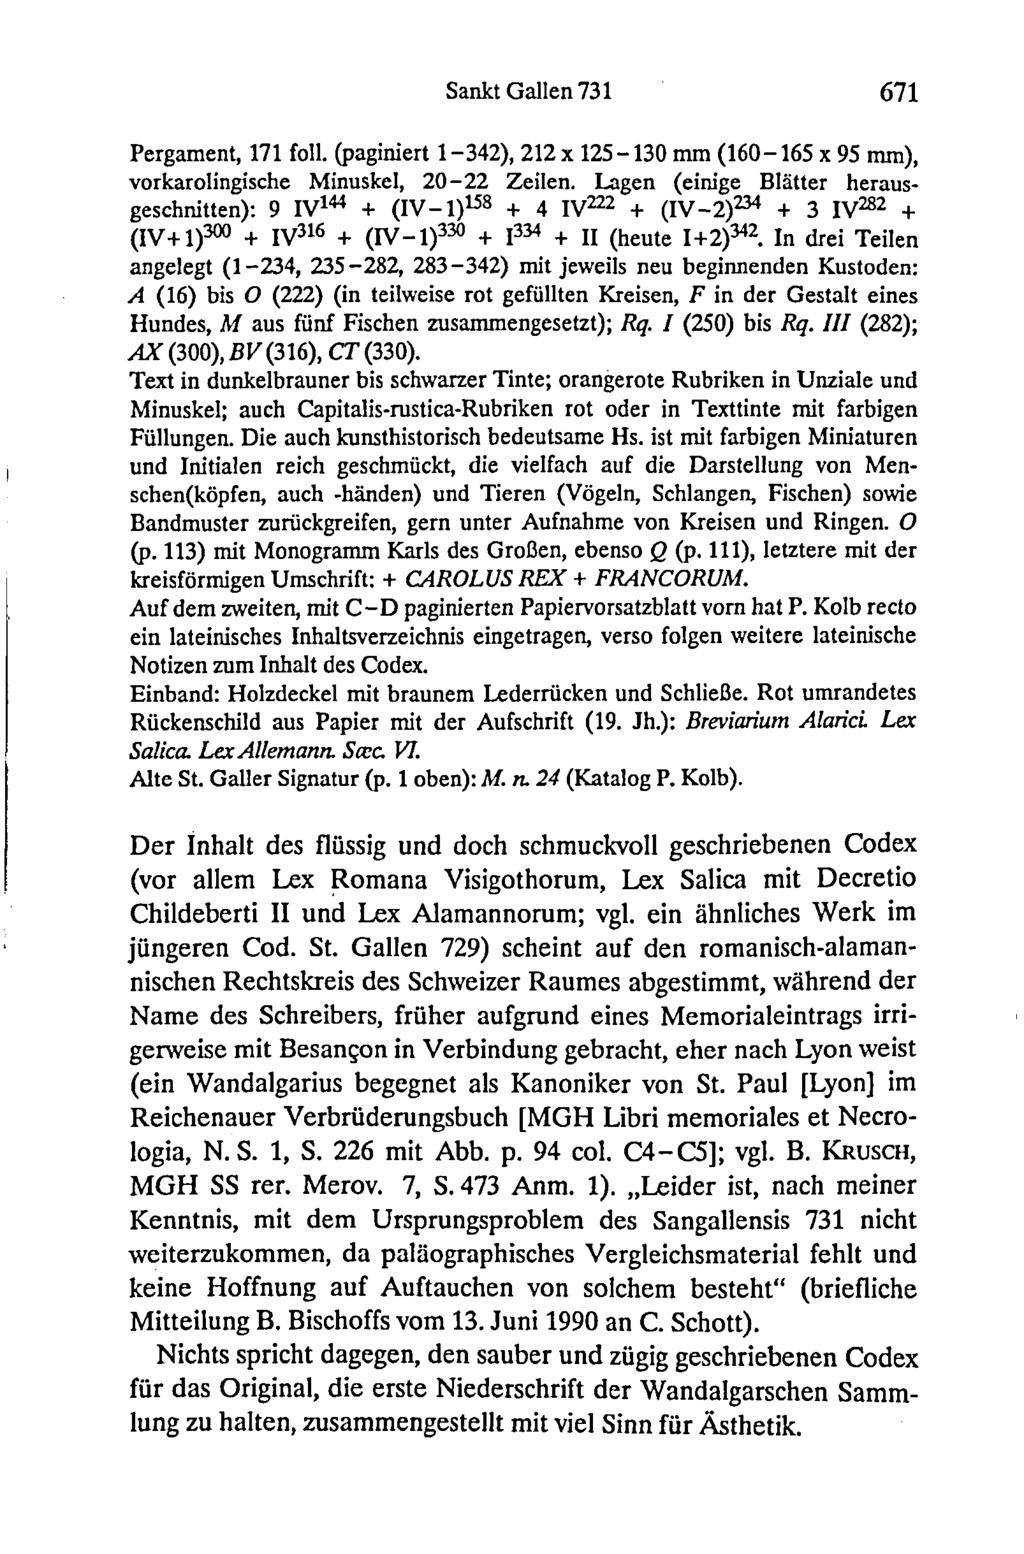 Sankt Gallen 731 671 Pergament, 171 foll. (paginiert 1-342), 212 x 125-130 mm (160-165 x 95 mm), vorkarolingische Minuskel, 2 0-2 2 Zeilen.